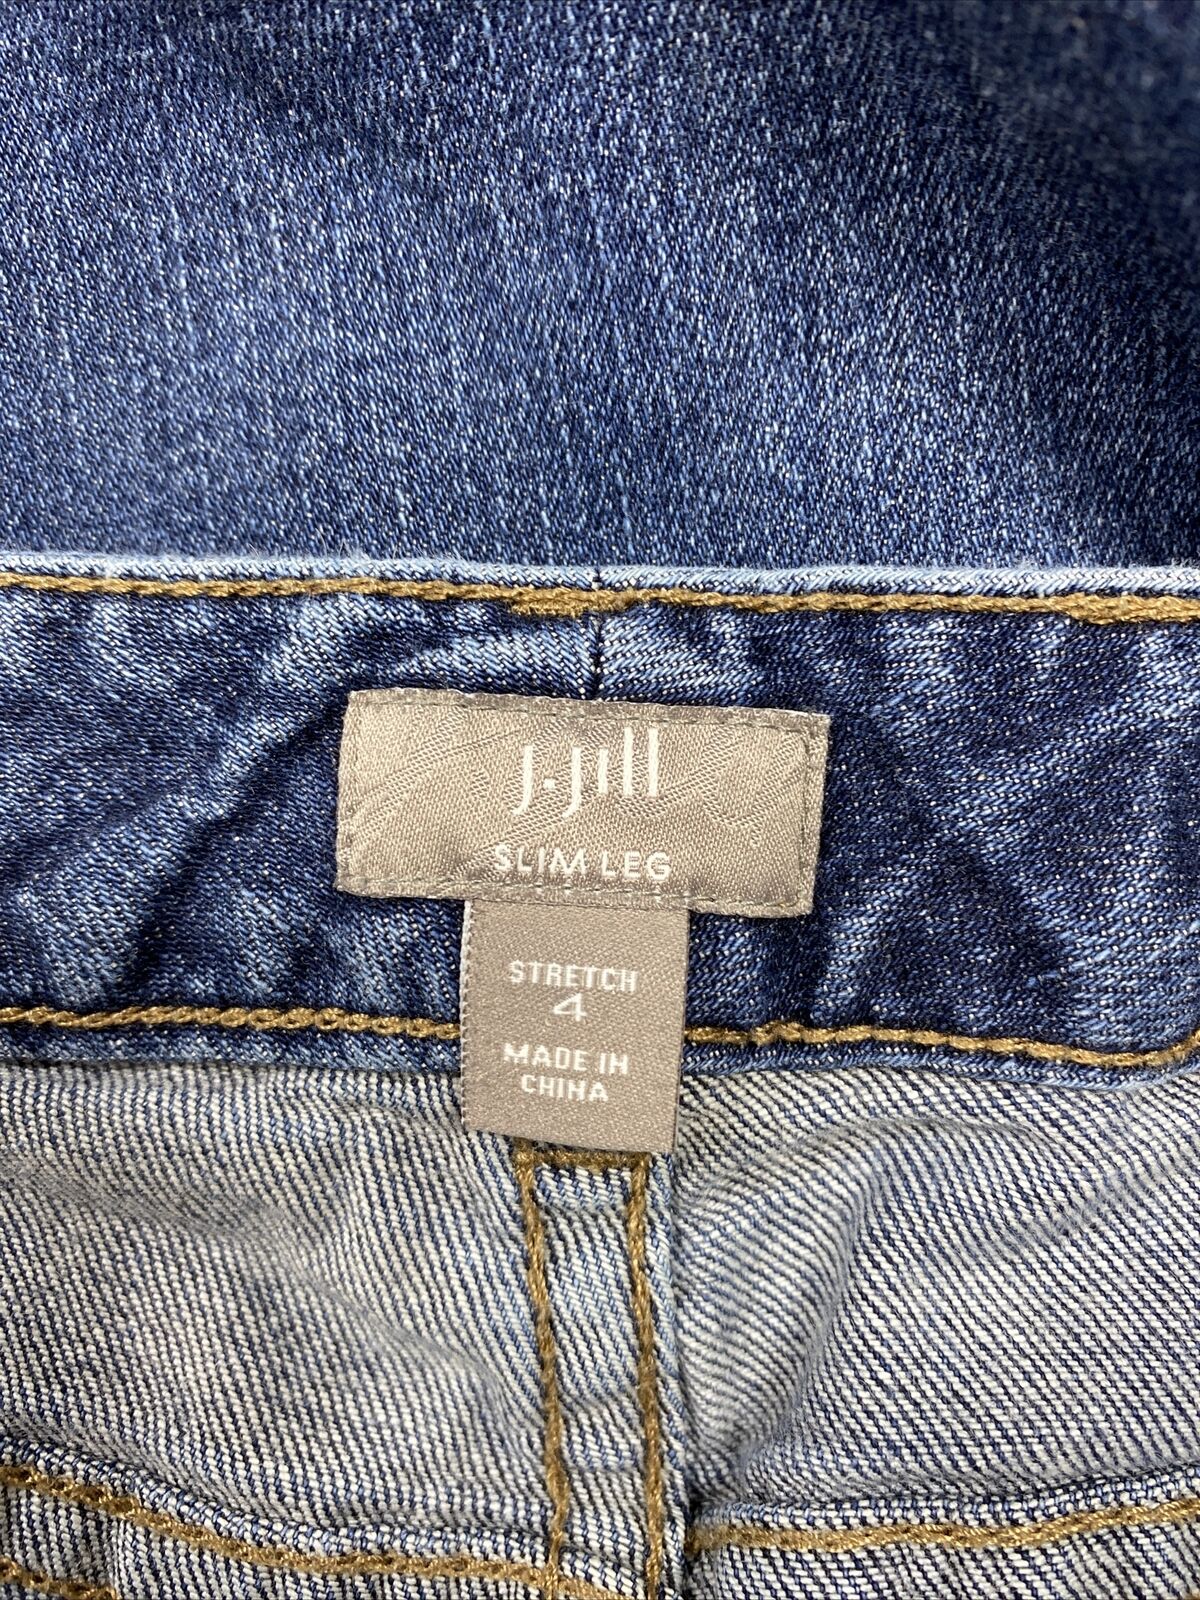 J. Jill Women's Dark Wash Stretch Slim Leg Denim Jeans - 4